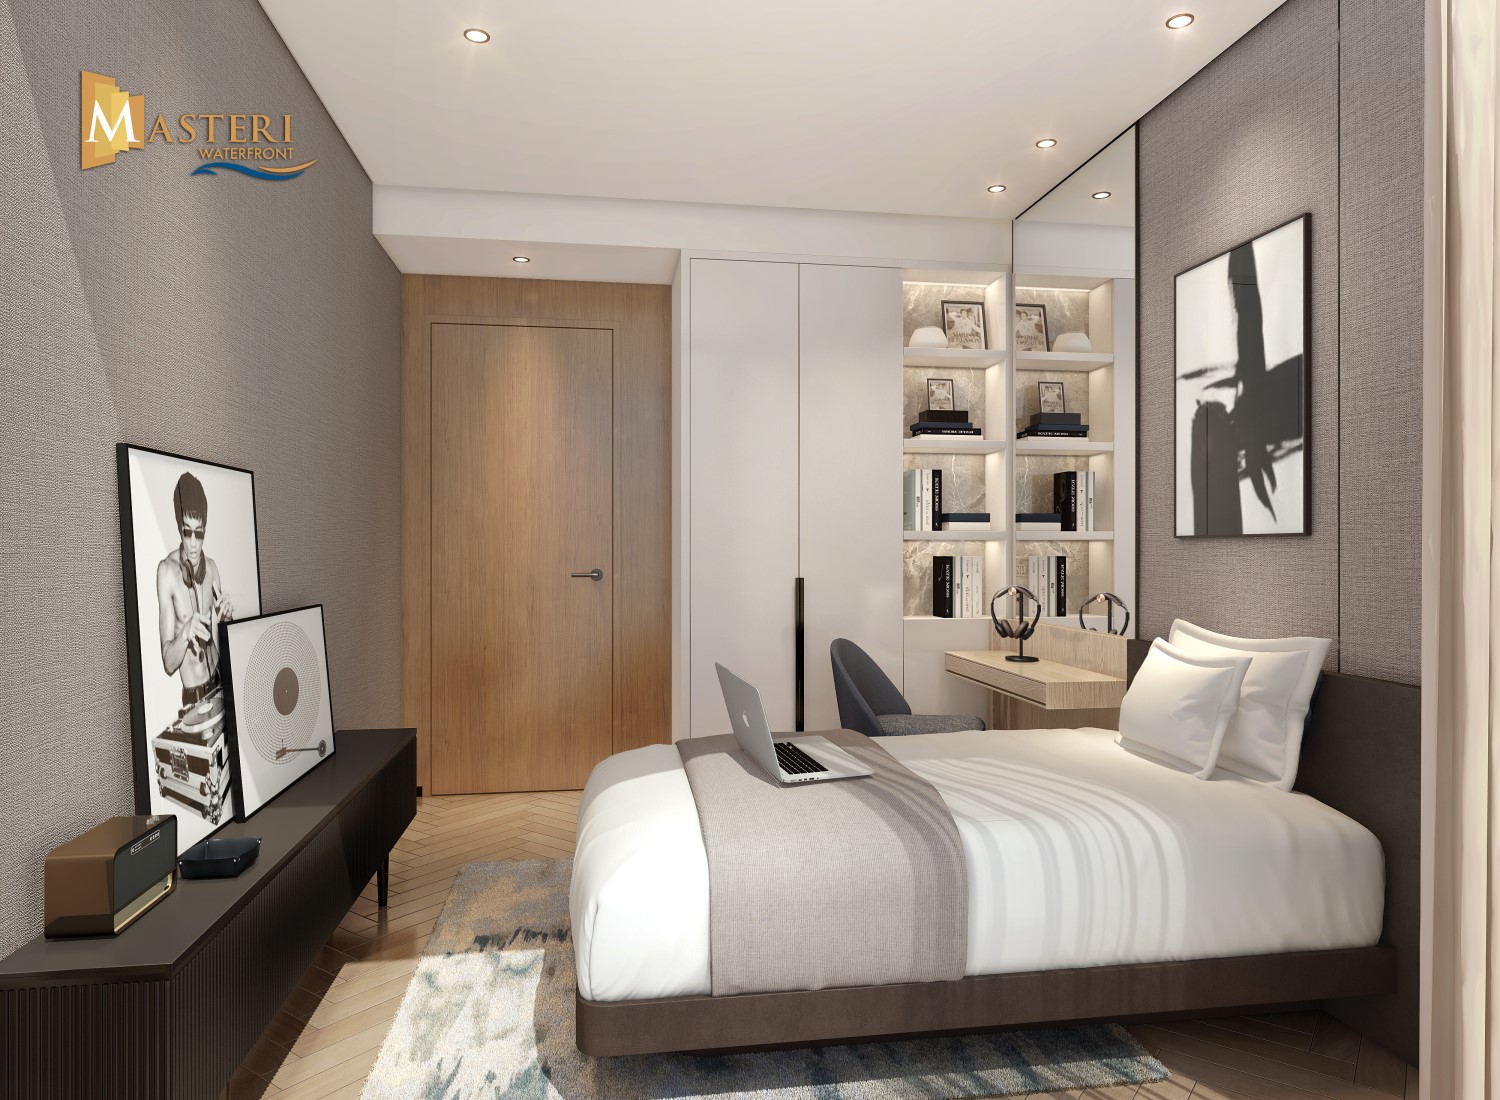 Căn hộ 3 phòng ngủ tại Masteri Ocean Park với thiết kế hiện đại